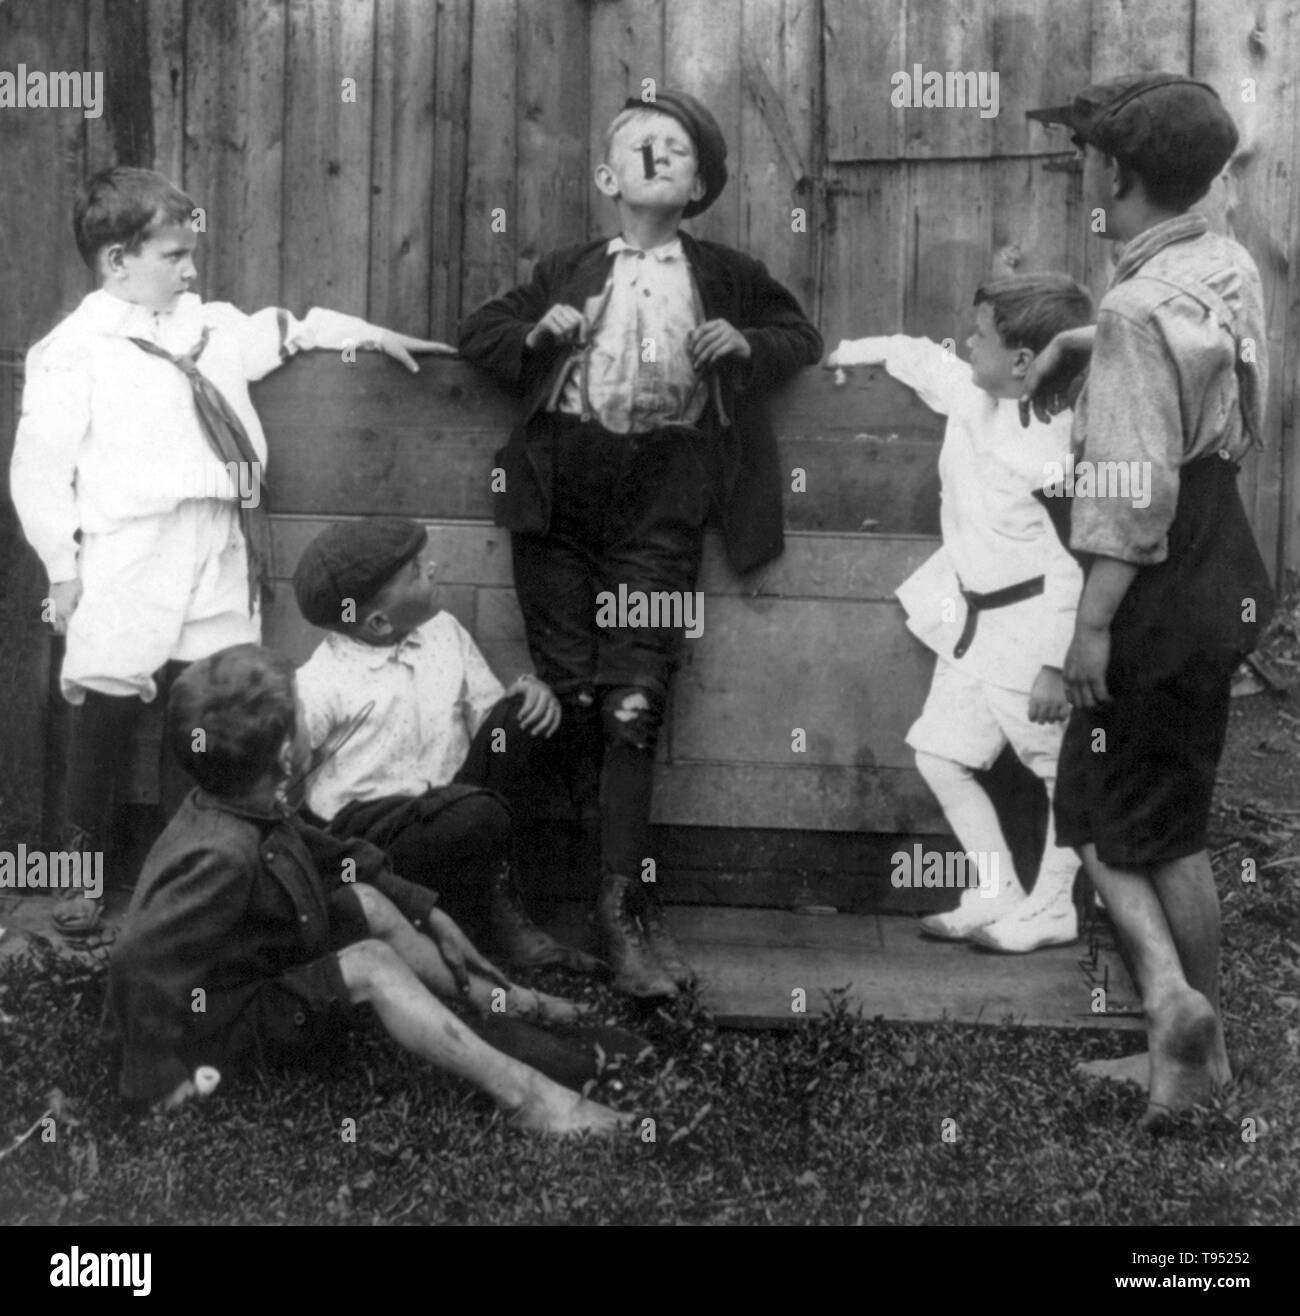 Titolo: "L'insegnante" mostra cinque ragazzi guardando un altro fumare un sigaro. Stereografia ritagliata fotografata da E.W. Kelley, 1906. Foto Stock